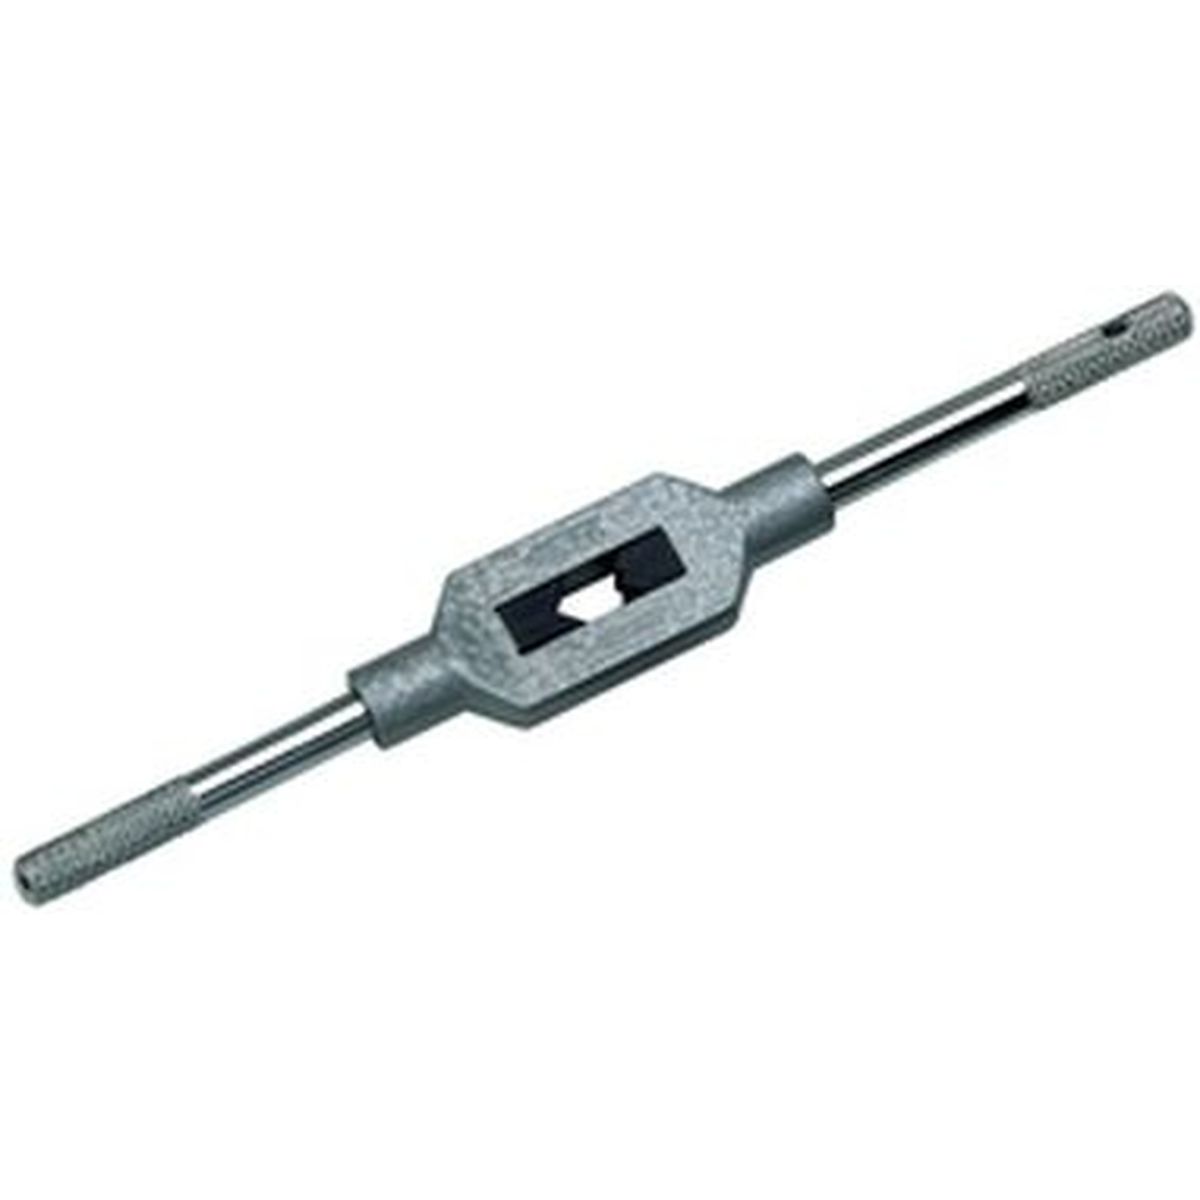 VÖLKEL Adjustable Tap Wrenches DIN1814 1 